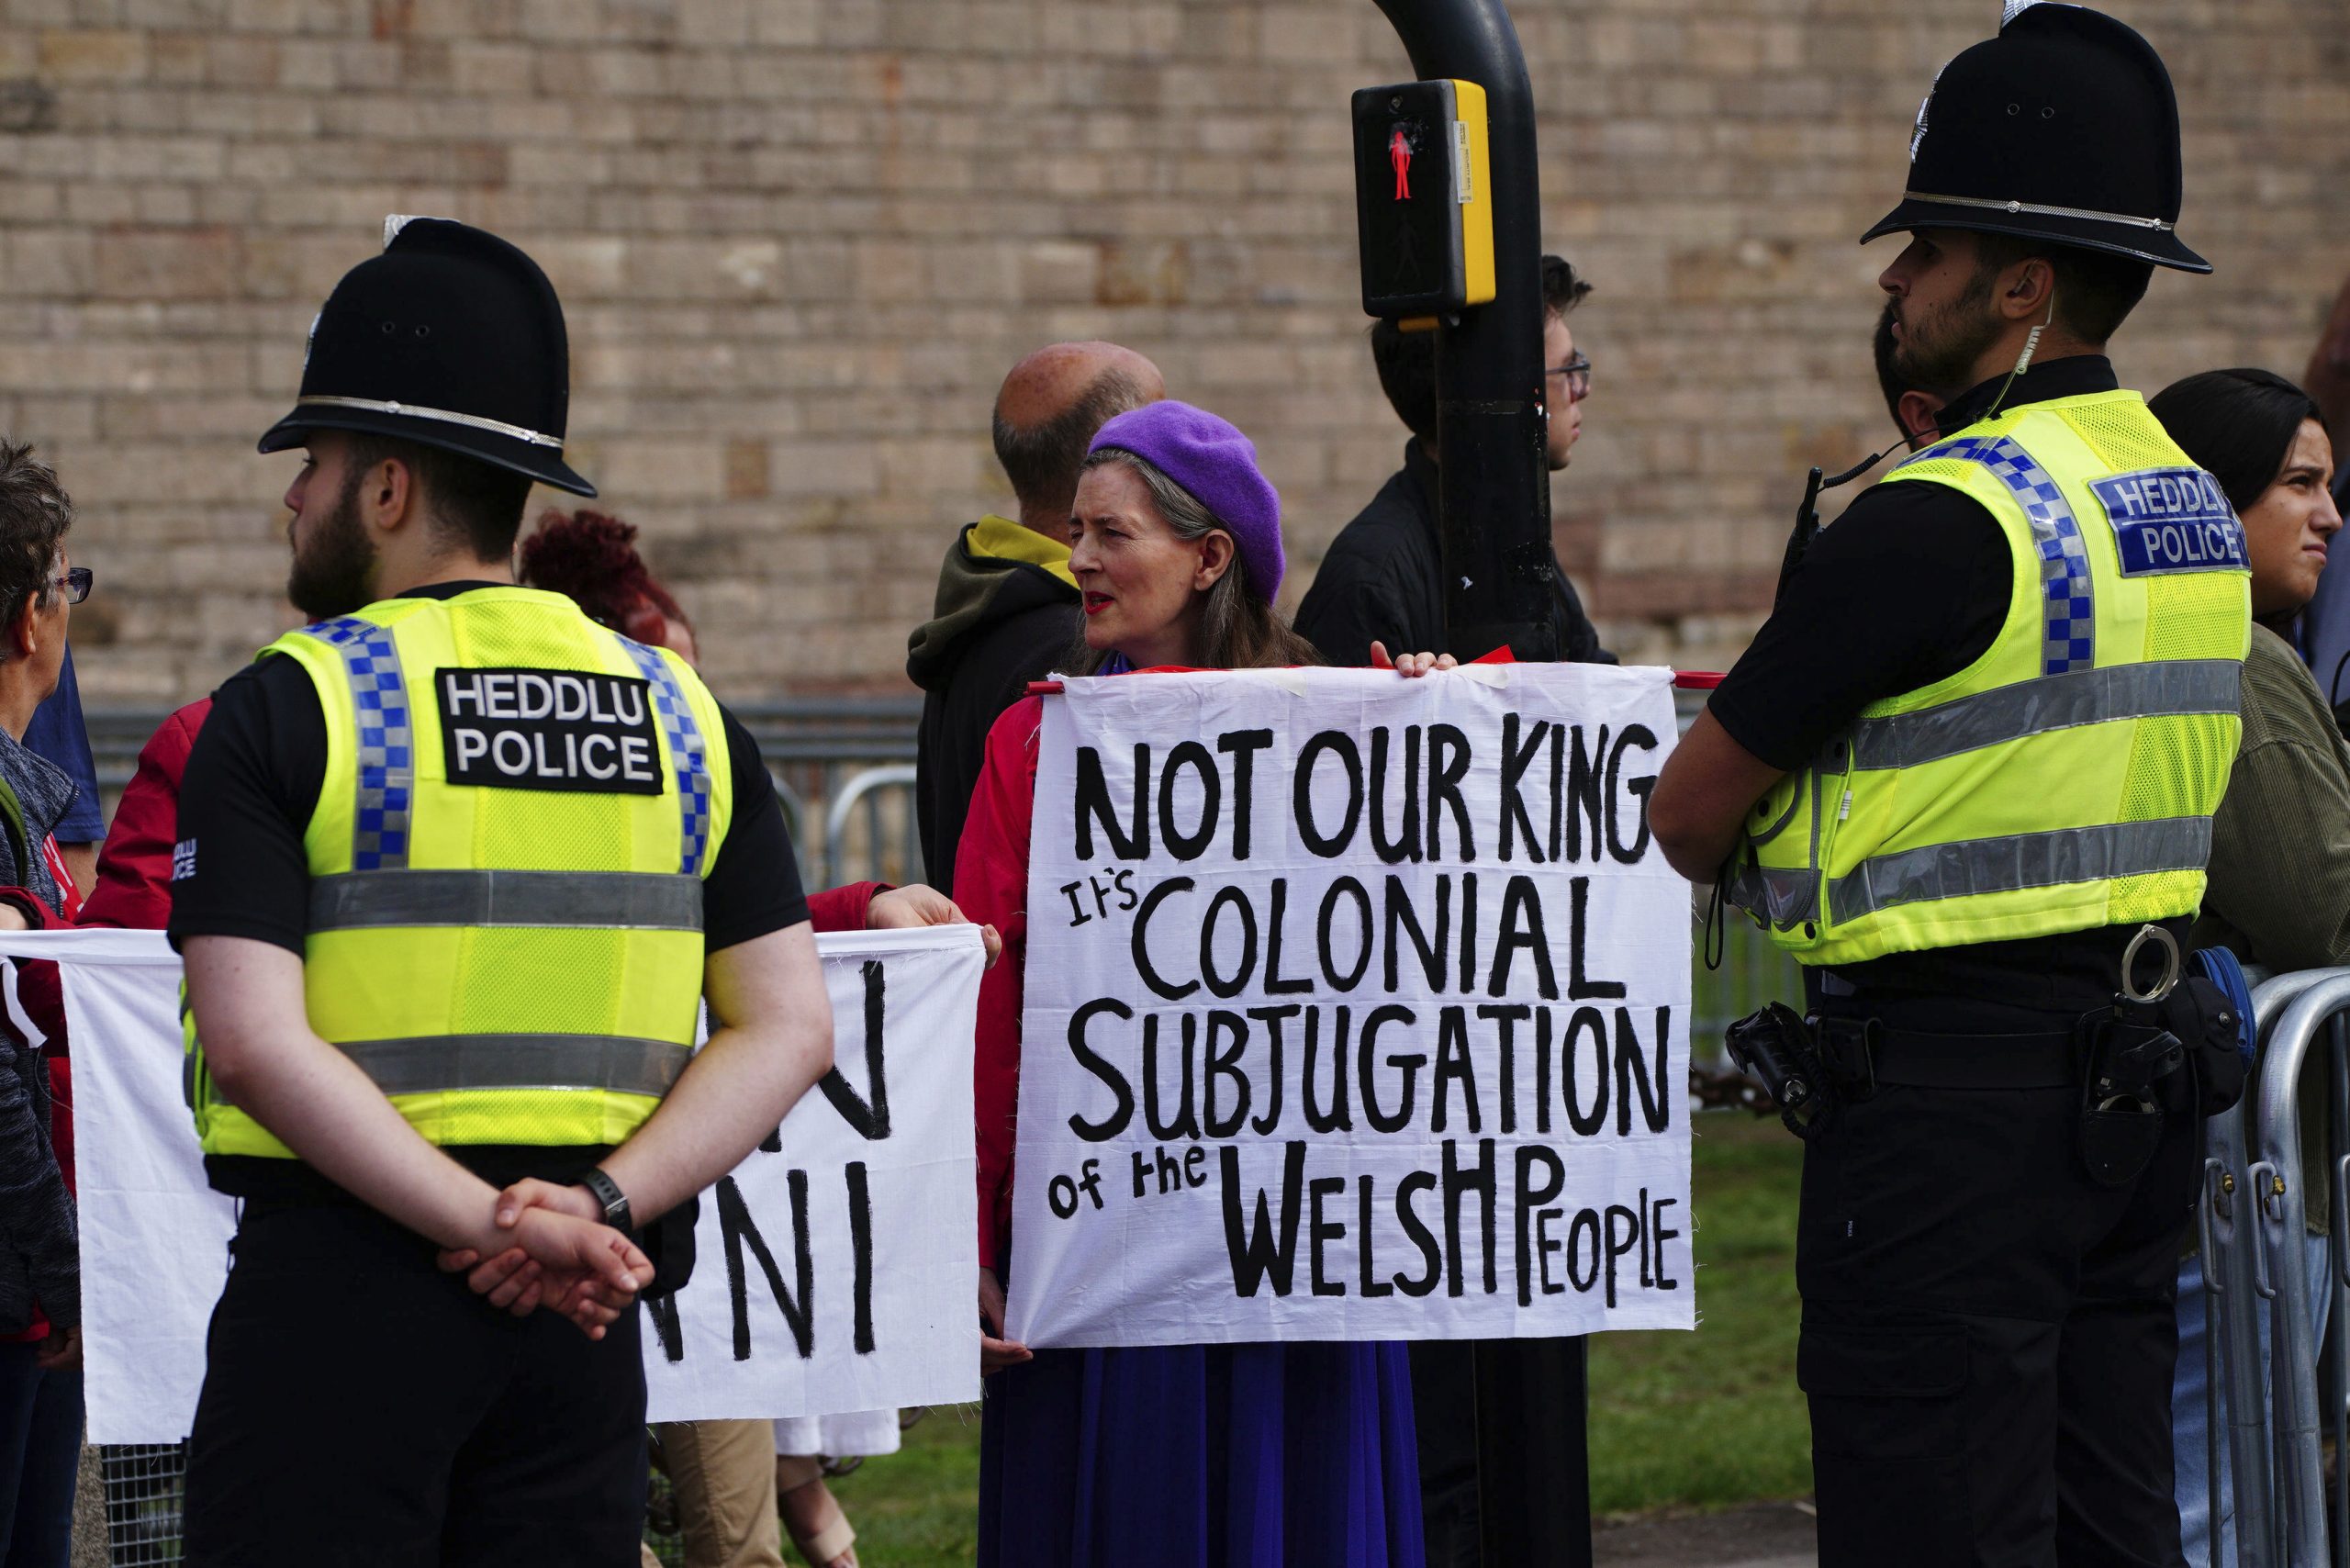 天下事 多人抗议王室 被捕 /主    英言论自由引争议 